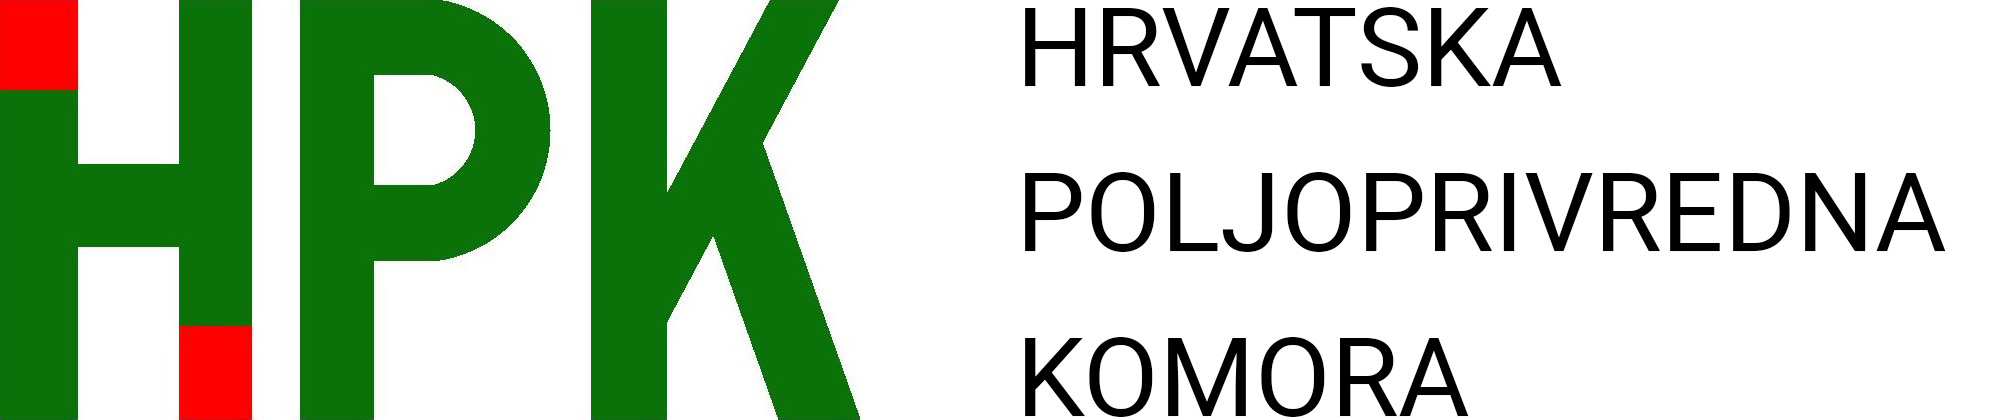 HPK u posjetu Mađarskoj poljoprivrednoj komori | HPK